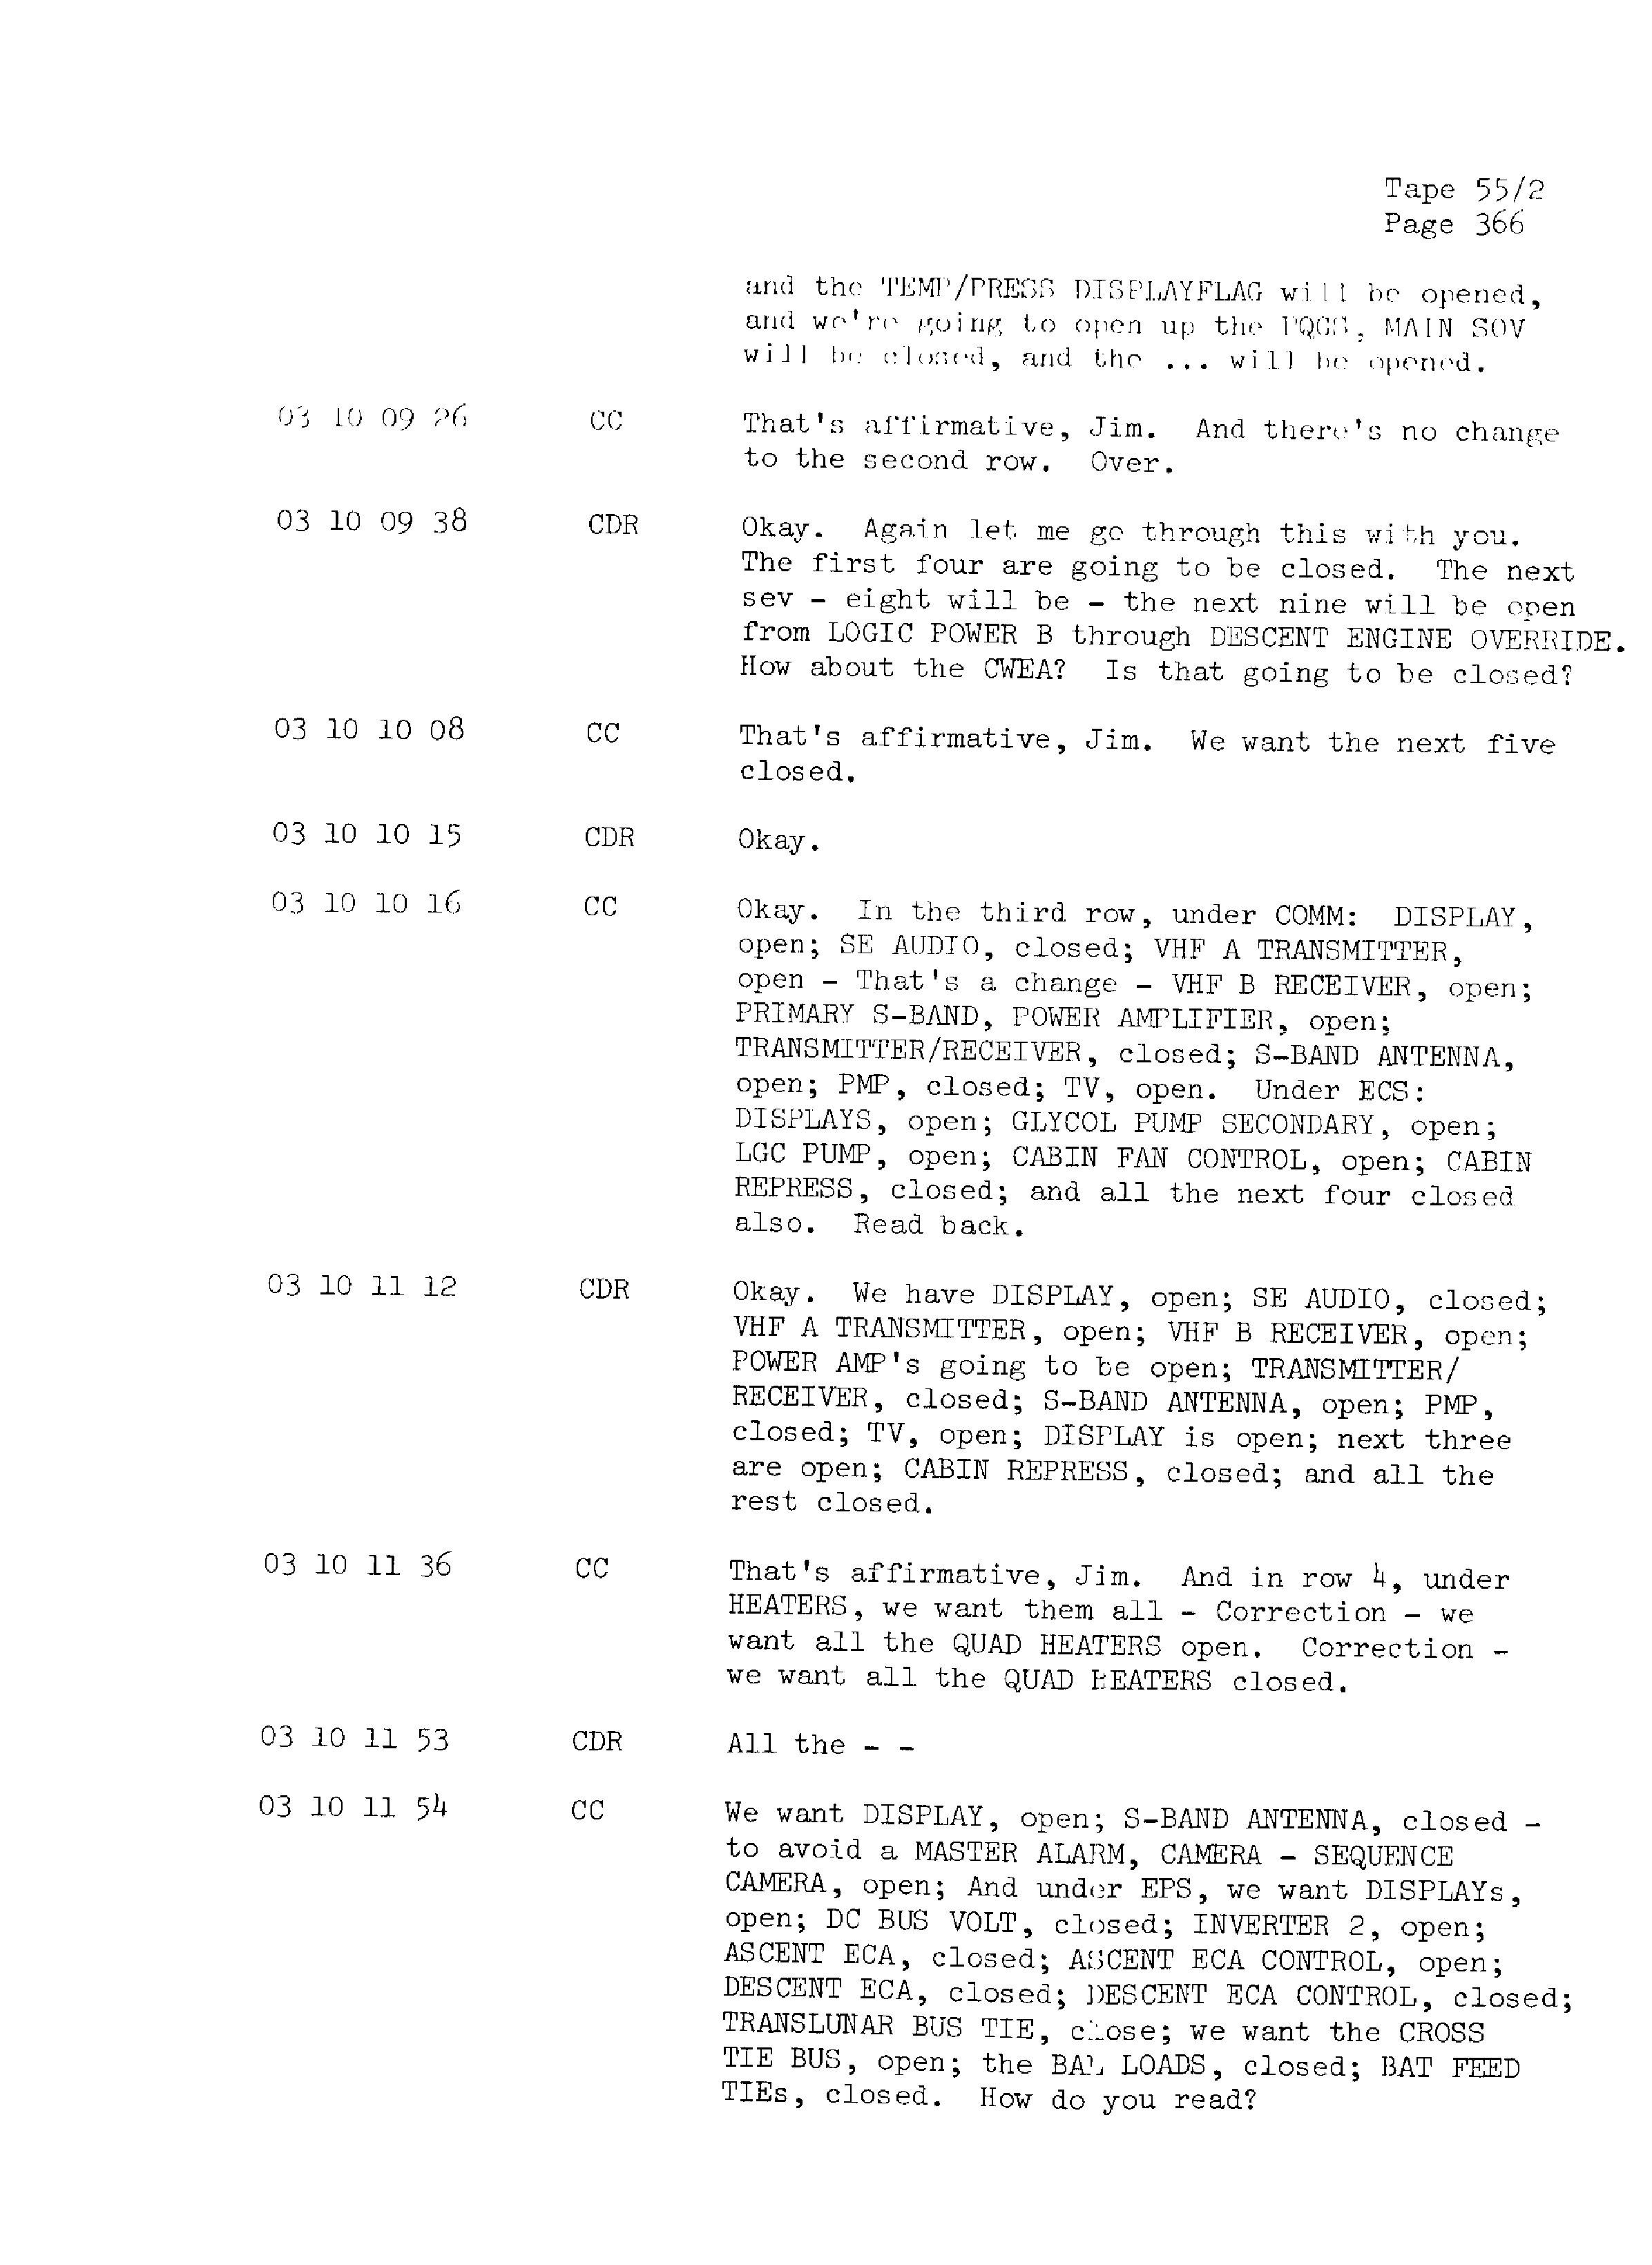 Page 373 of Apollo 13’s original transcript